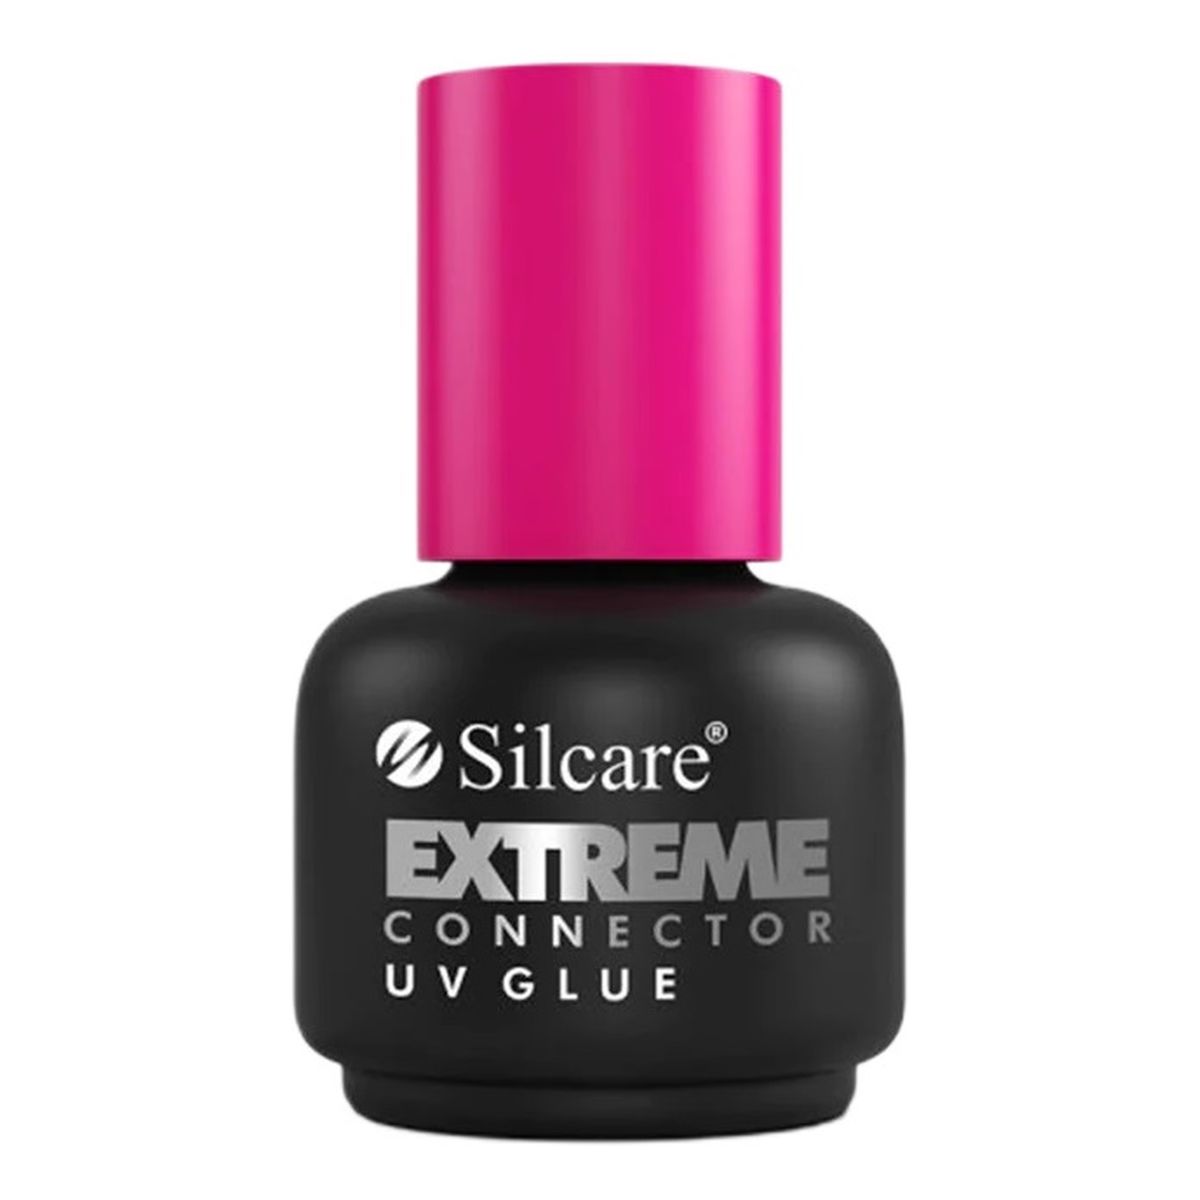 Silcare Extreme Connector UV Glue klej UV zwiększający przyczepność masy Żelowej do płytki paznokcia 15ml